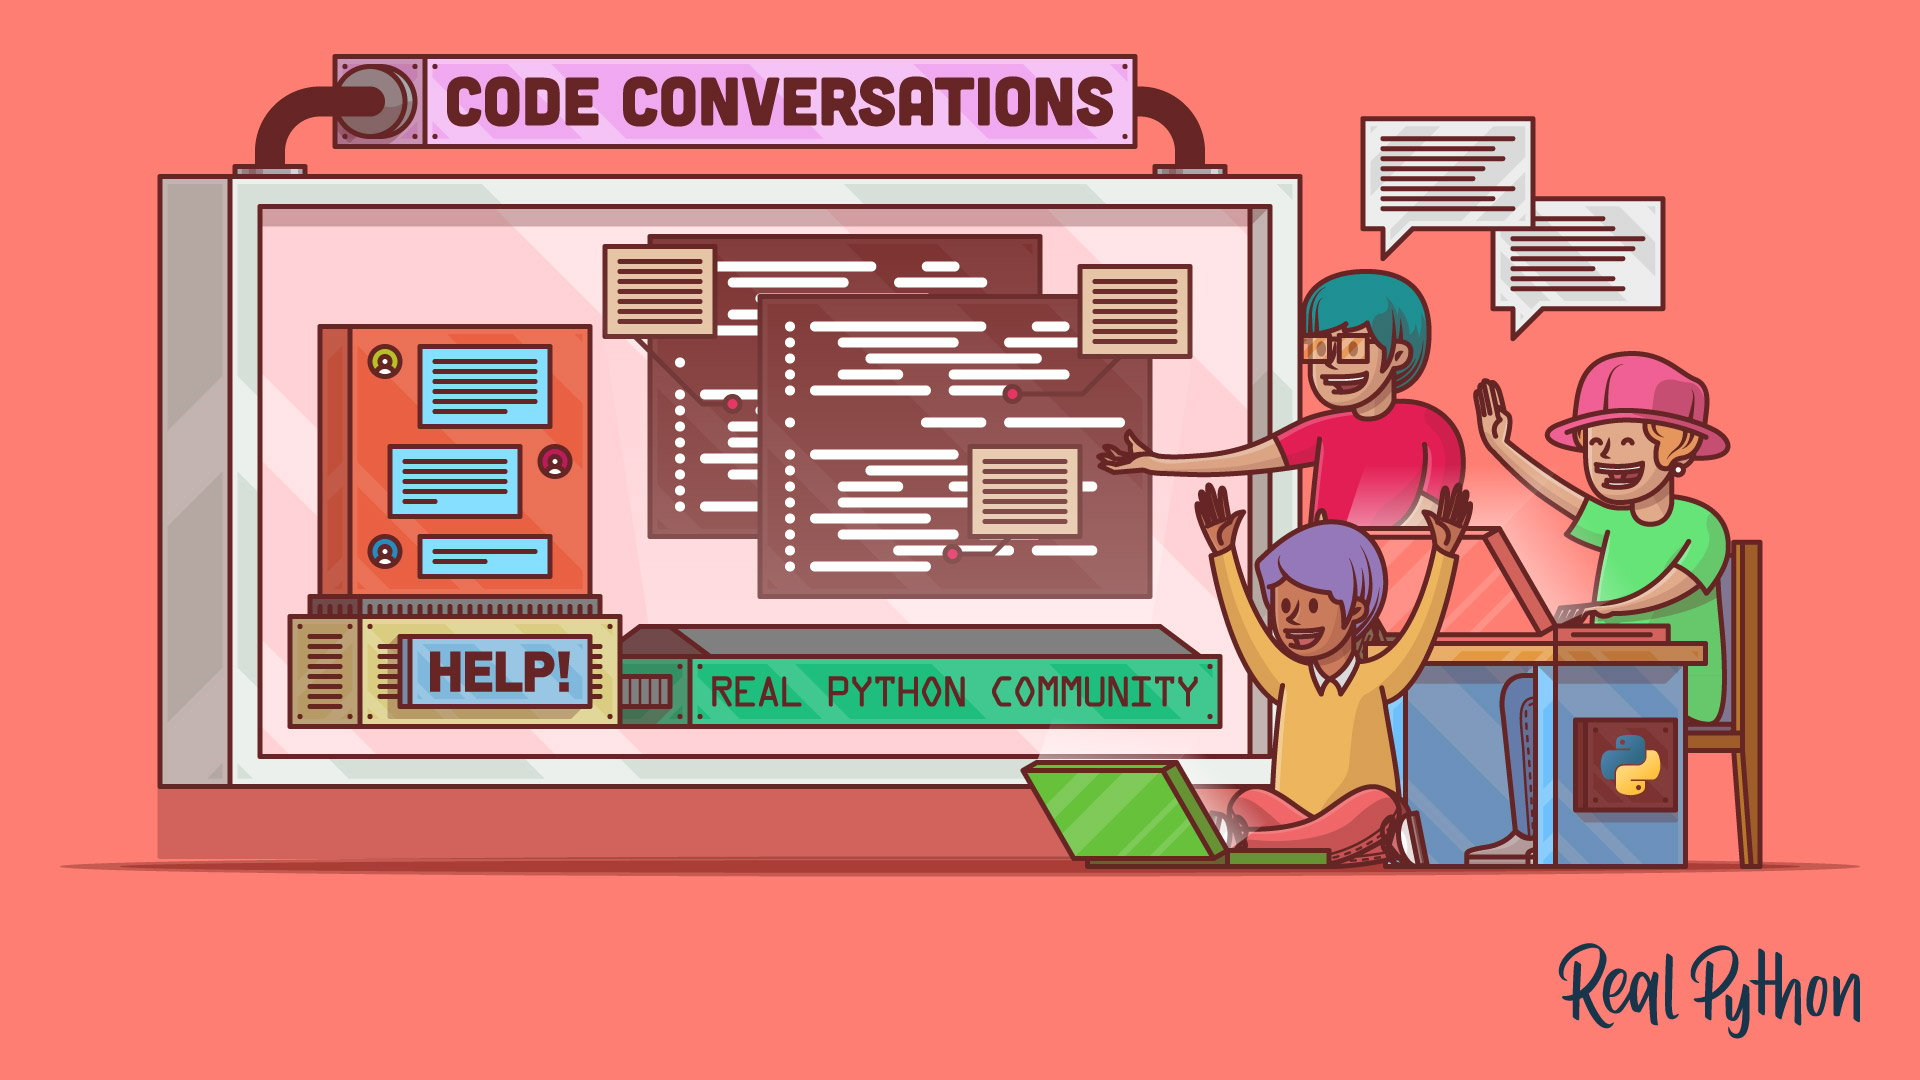 Refactoring: Prepare Your Code to Get Help